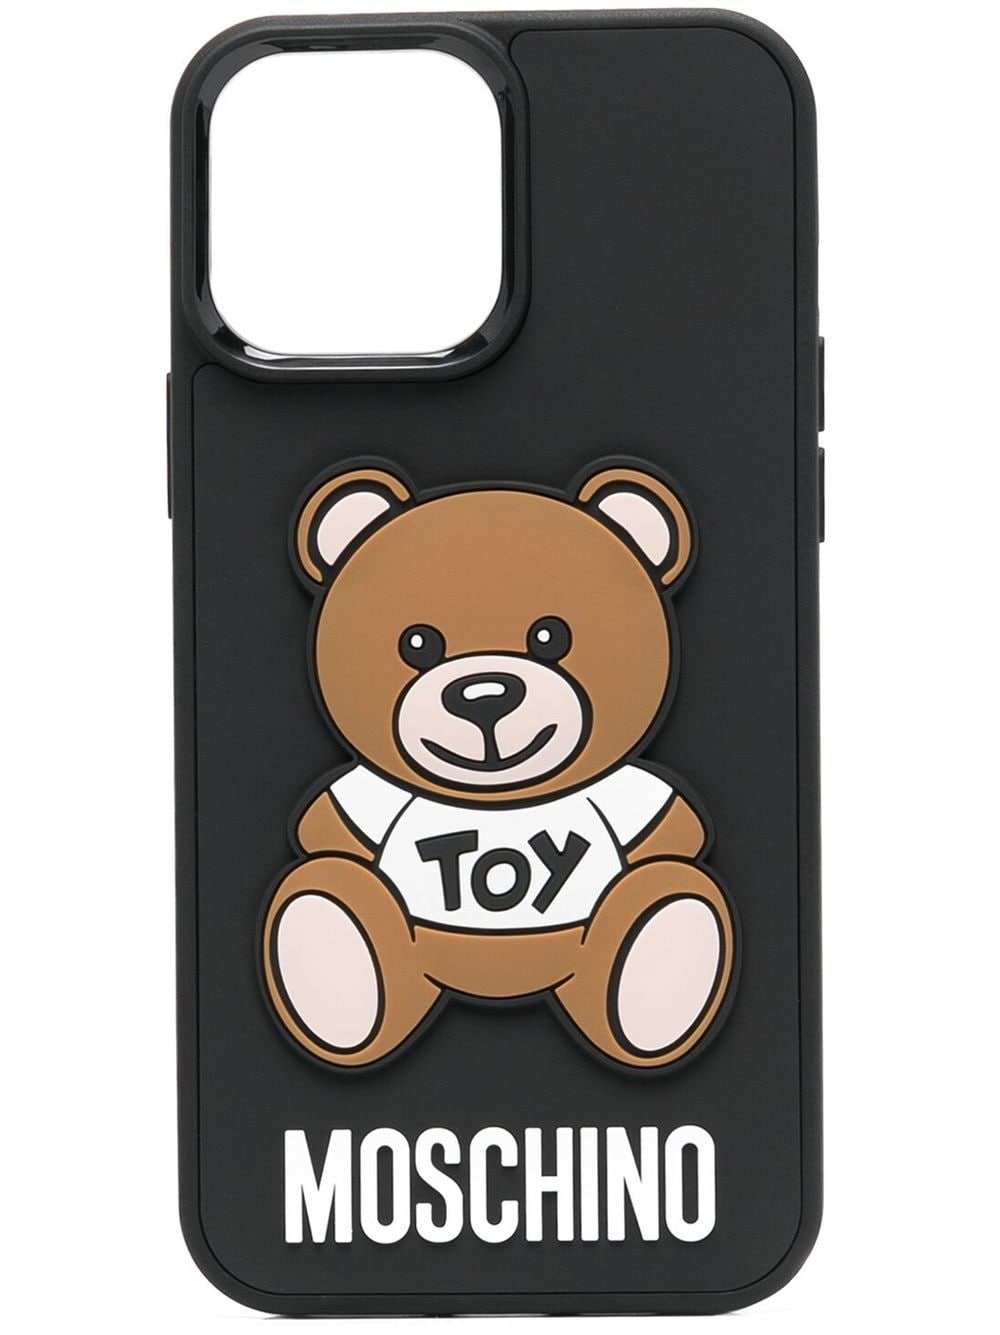 Moschino iPhone 12 Pro Max case - Black von Moschino